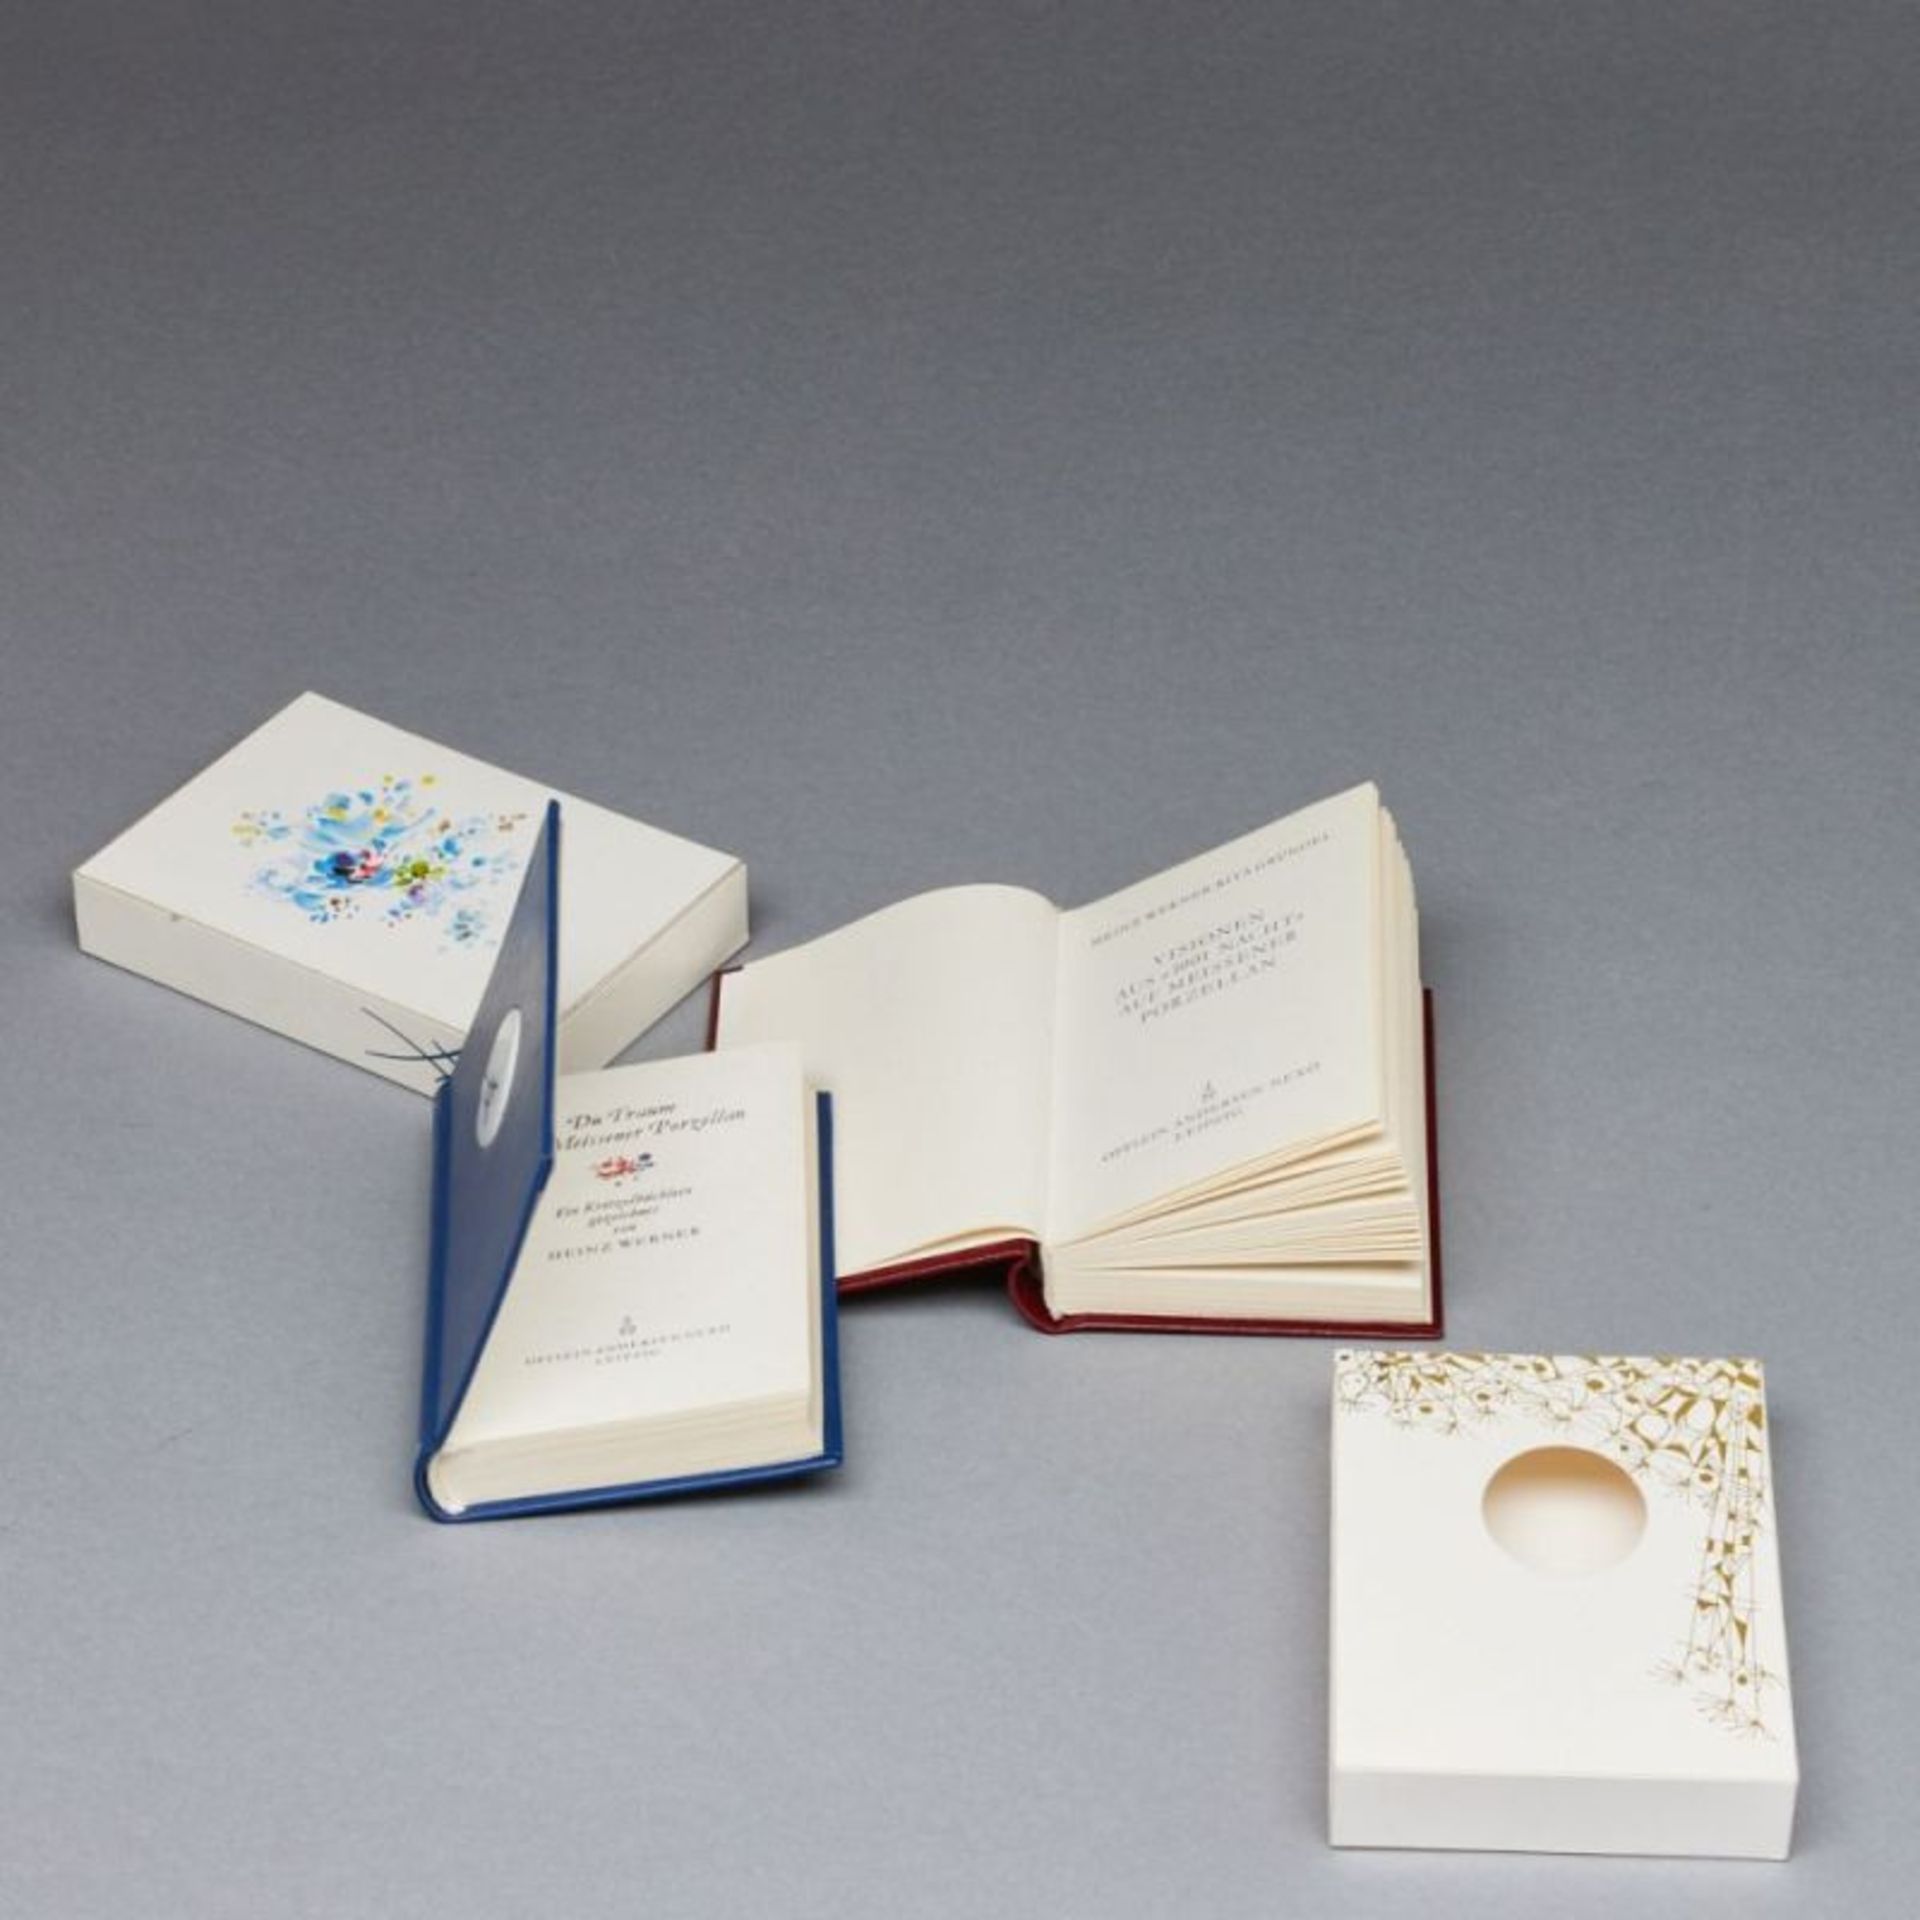 Zwei Miniaturbücher mit Meissen-Plakette (Schwertermarke) im Deckel - sog. Kritzelbüchlein. Meissen,